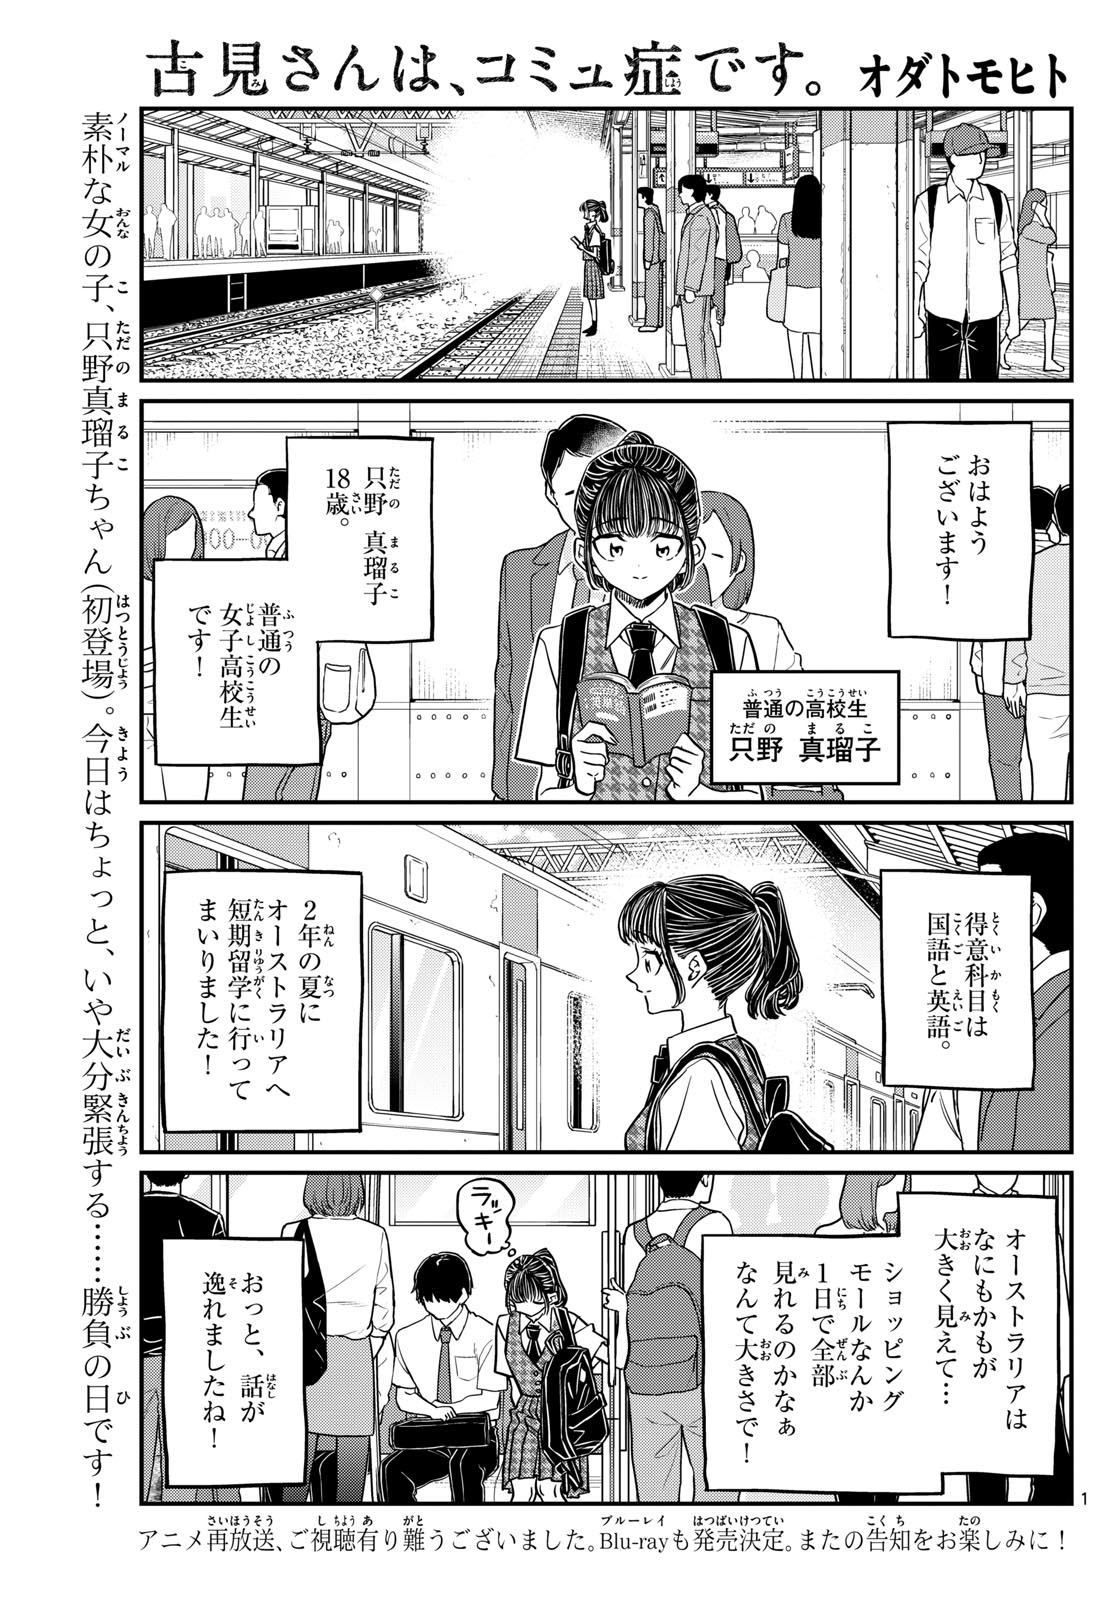 Komi-san wa Komyushou Desu - Chapter 437 - Page 1